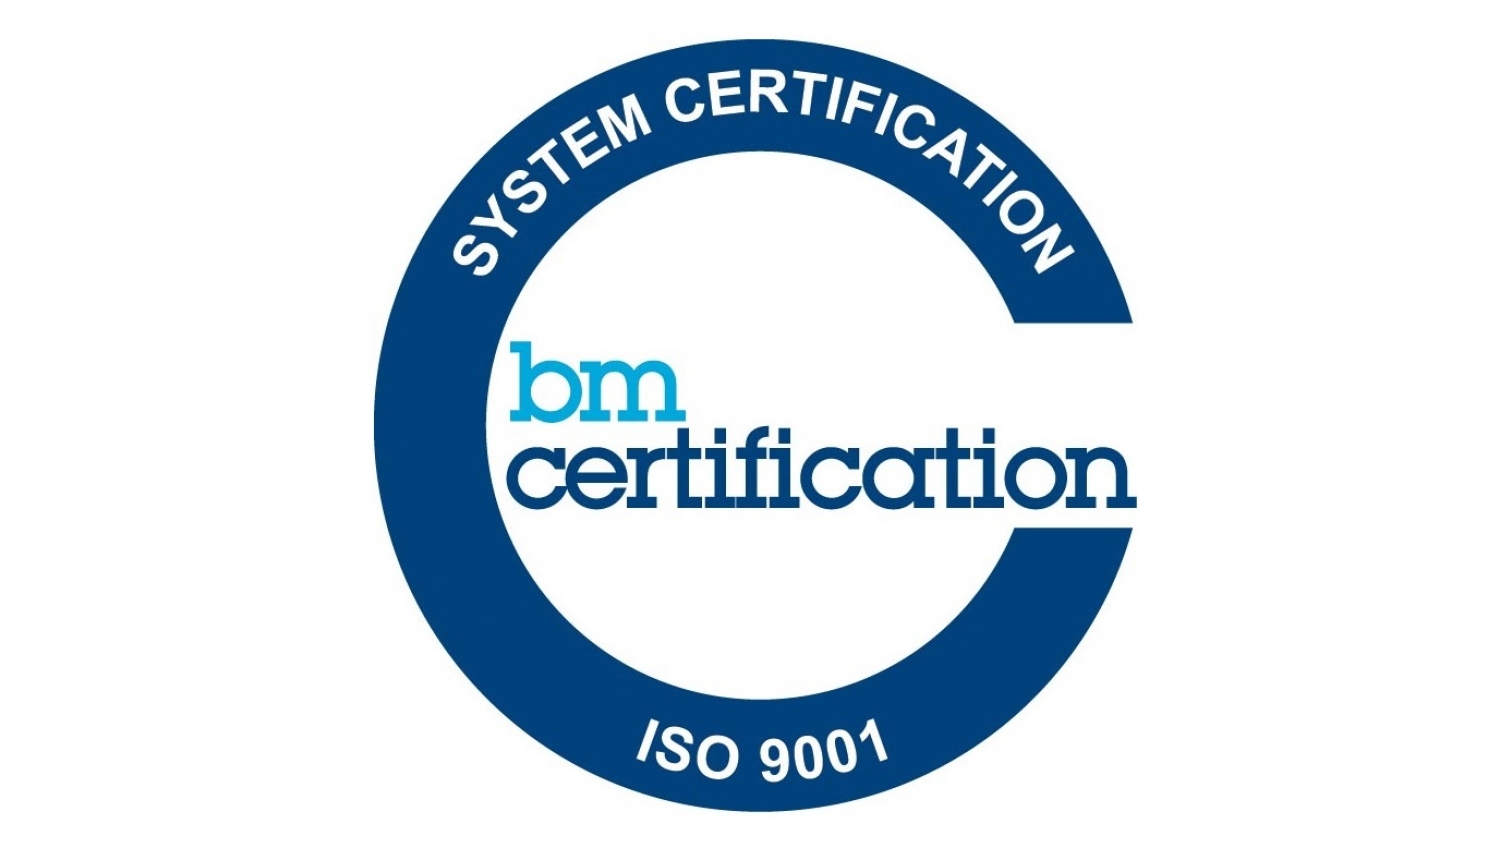 bm certification iso 9001